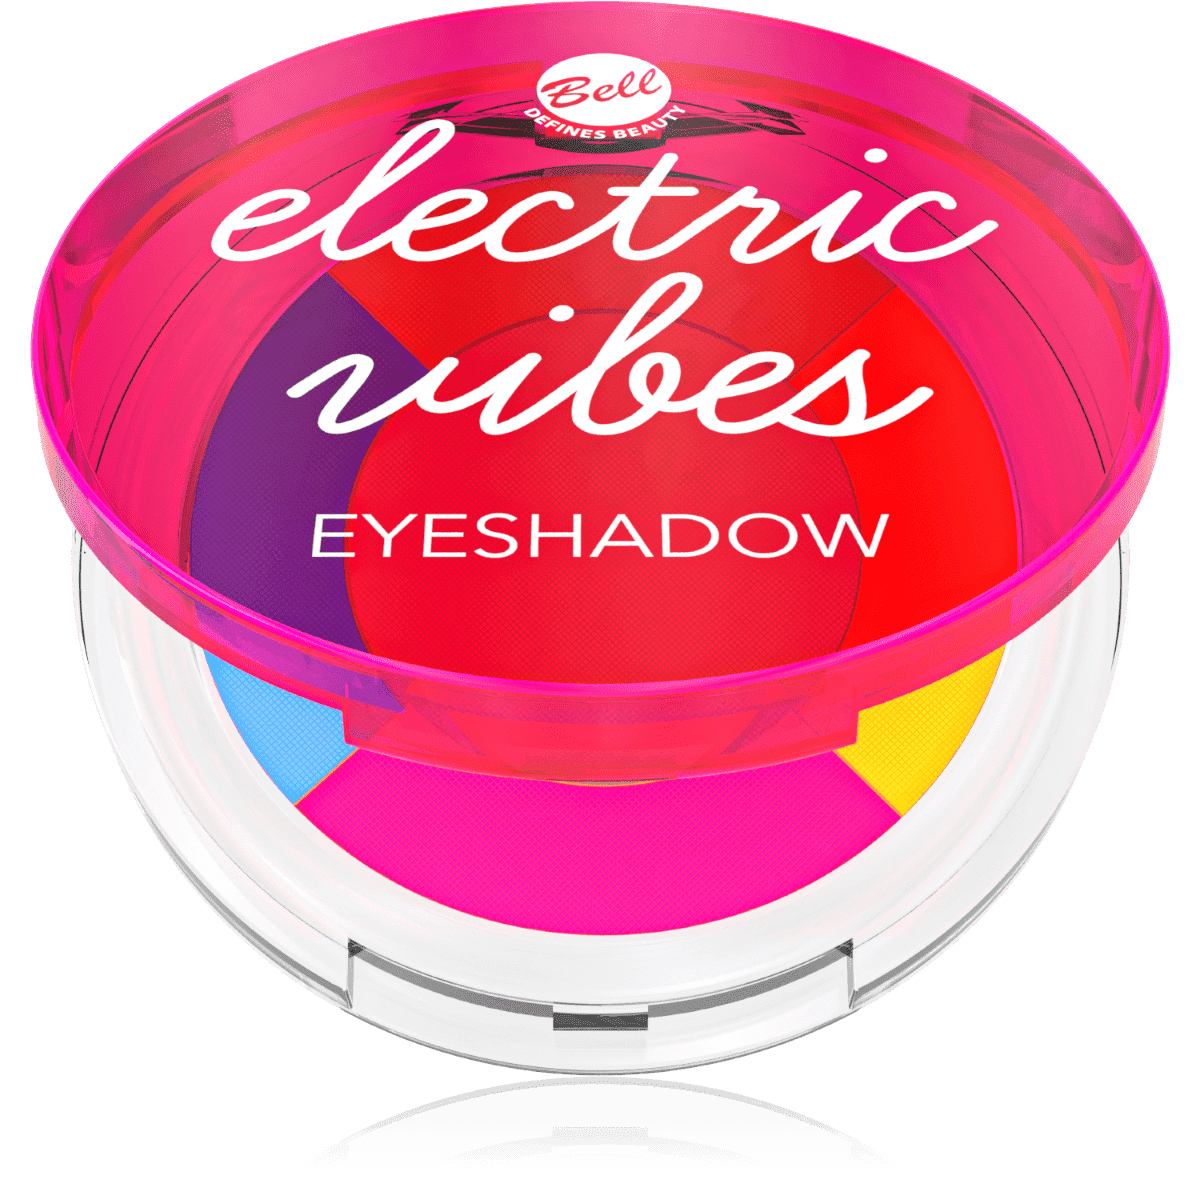 Bell Electric Vibes Eyeshadow 01 Cienie do powiek